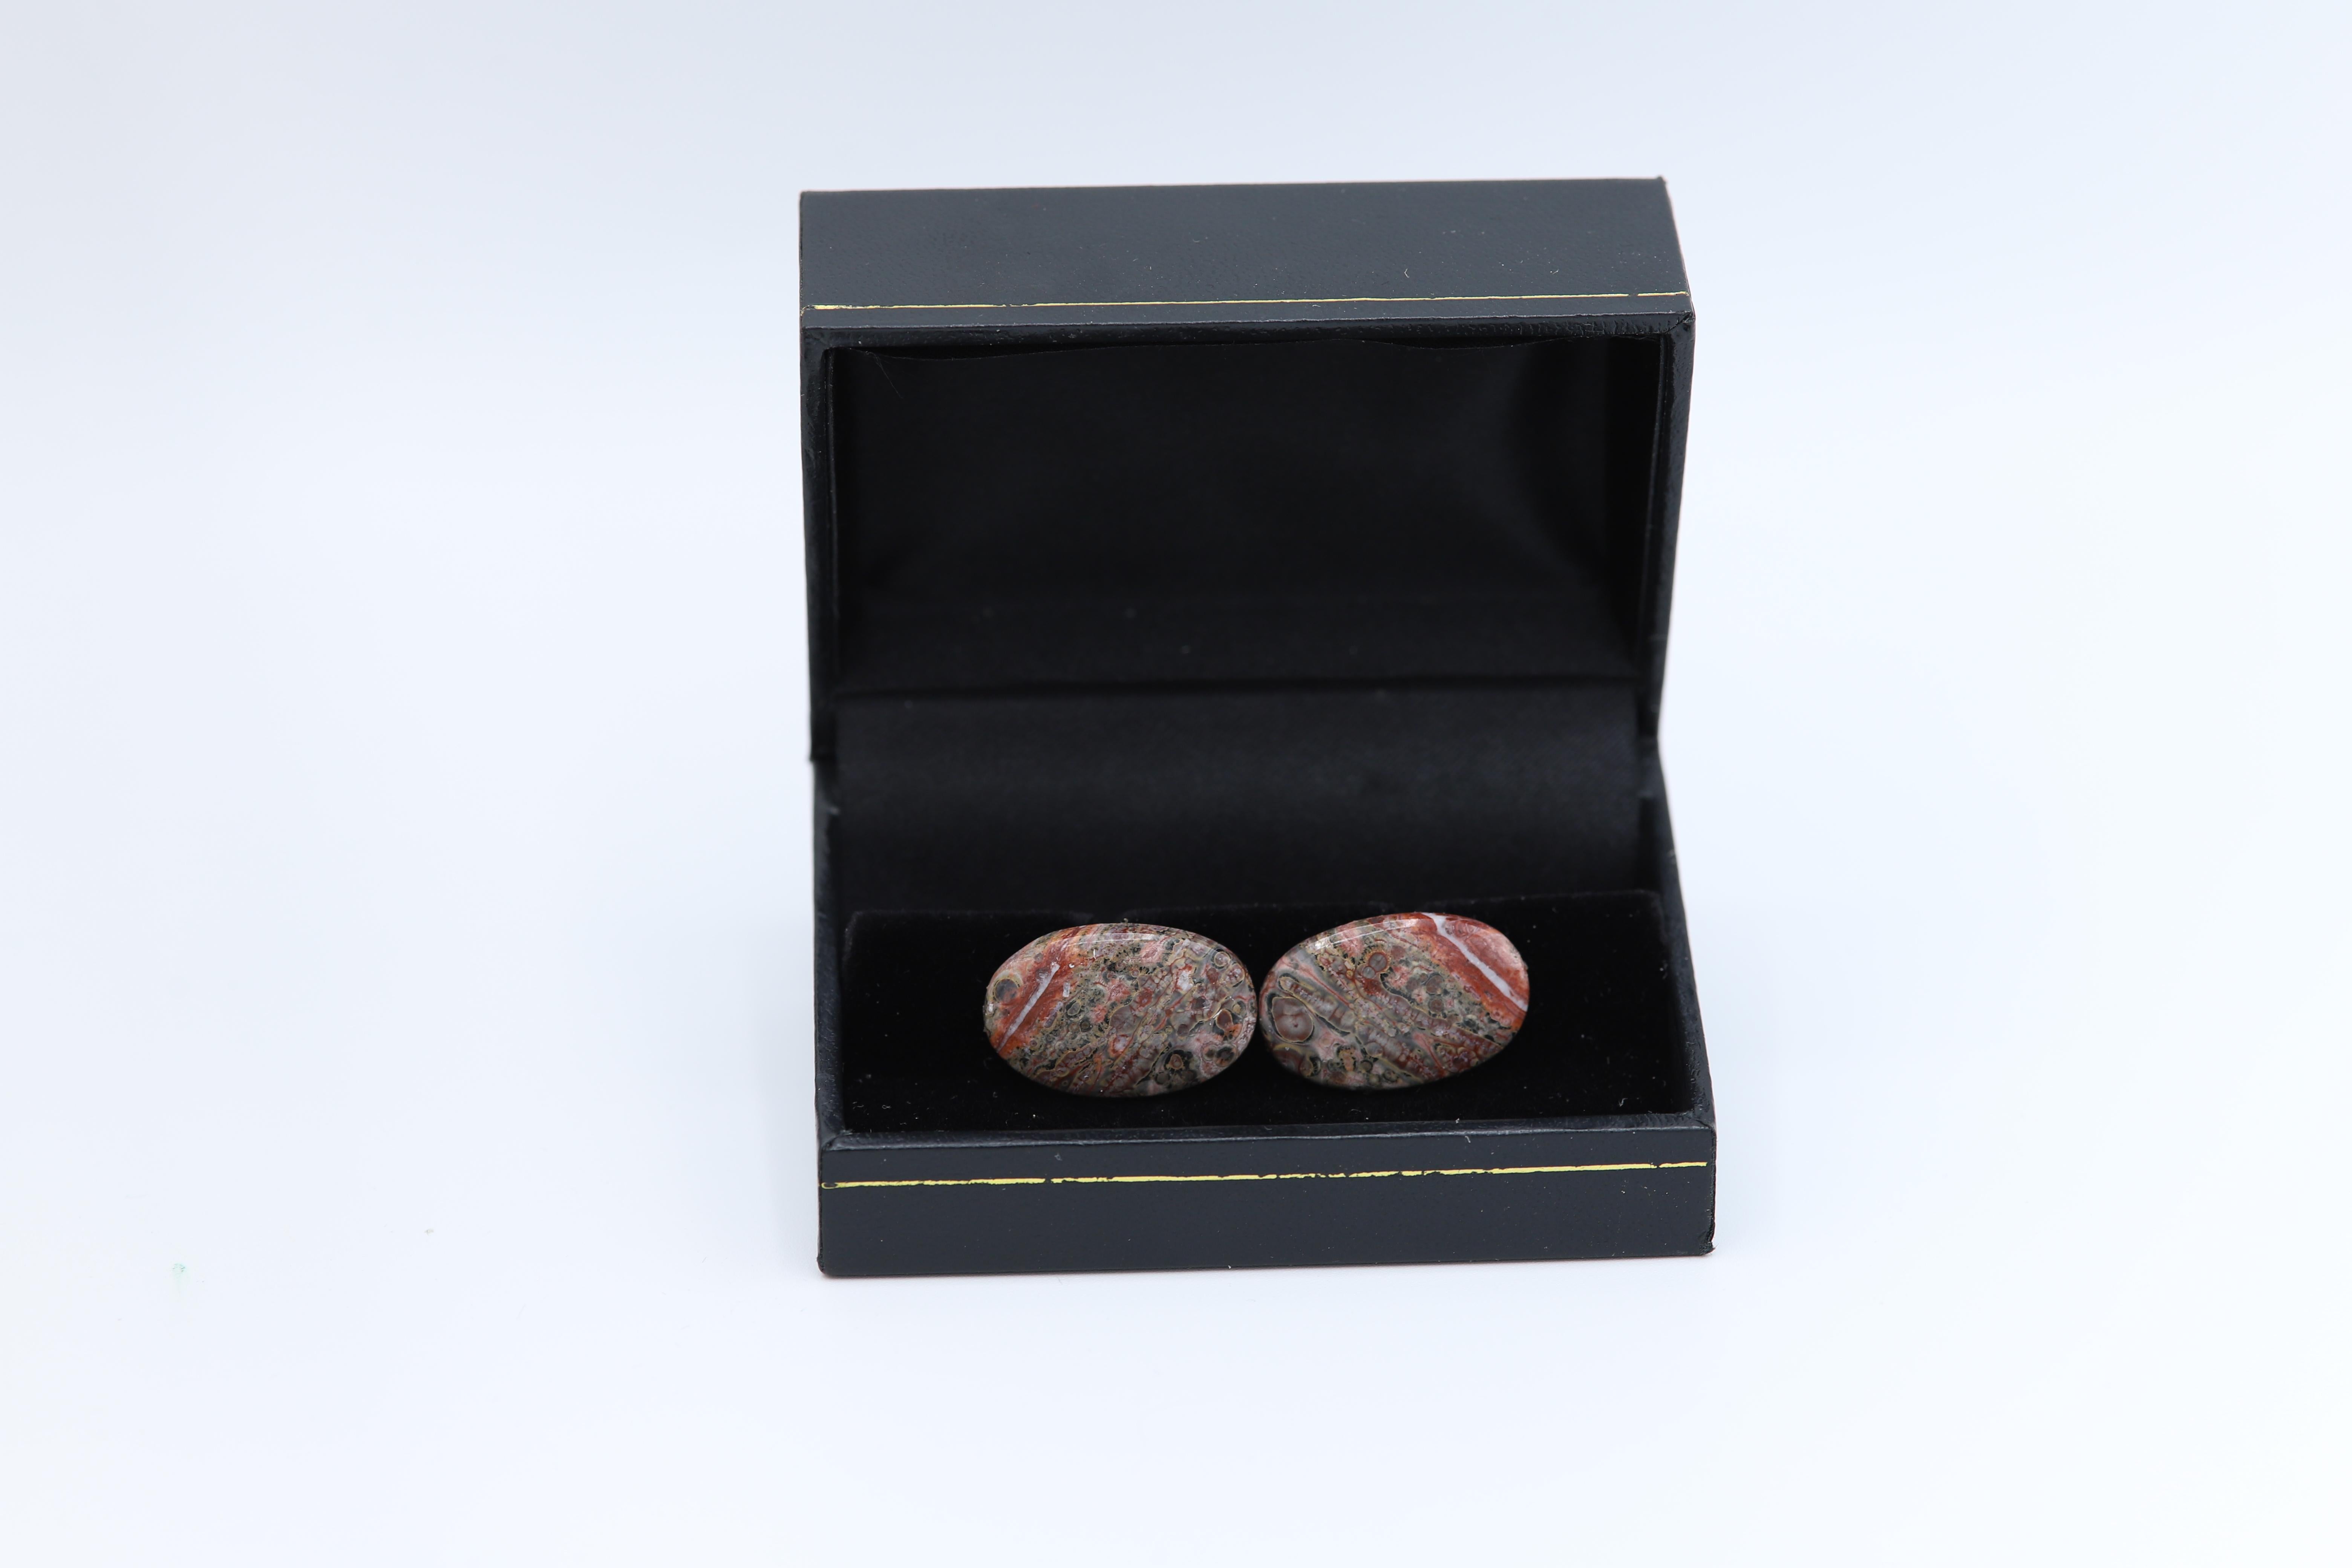 Einzigartiger Manschettenknöpfer für Männer – natürlicher Stein.
Steinname: Jaspis aus Leopardenhaut
Ca. Größe 22 X 14 MM
Schöne natürliche Textur.
Die Unvollkommenheit kann auf natürliche Formationen zurückzuführen sein.
Rückteil aus Metall ist ein